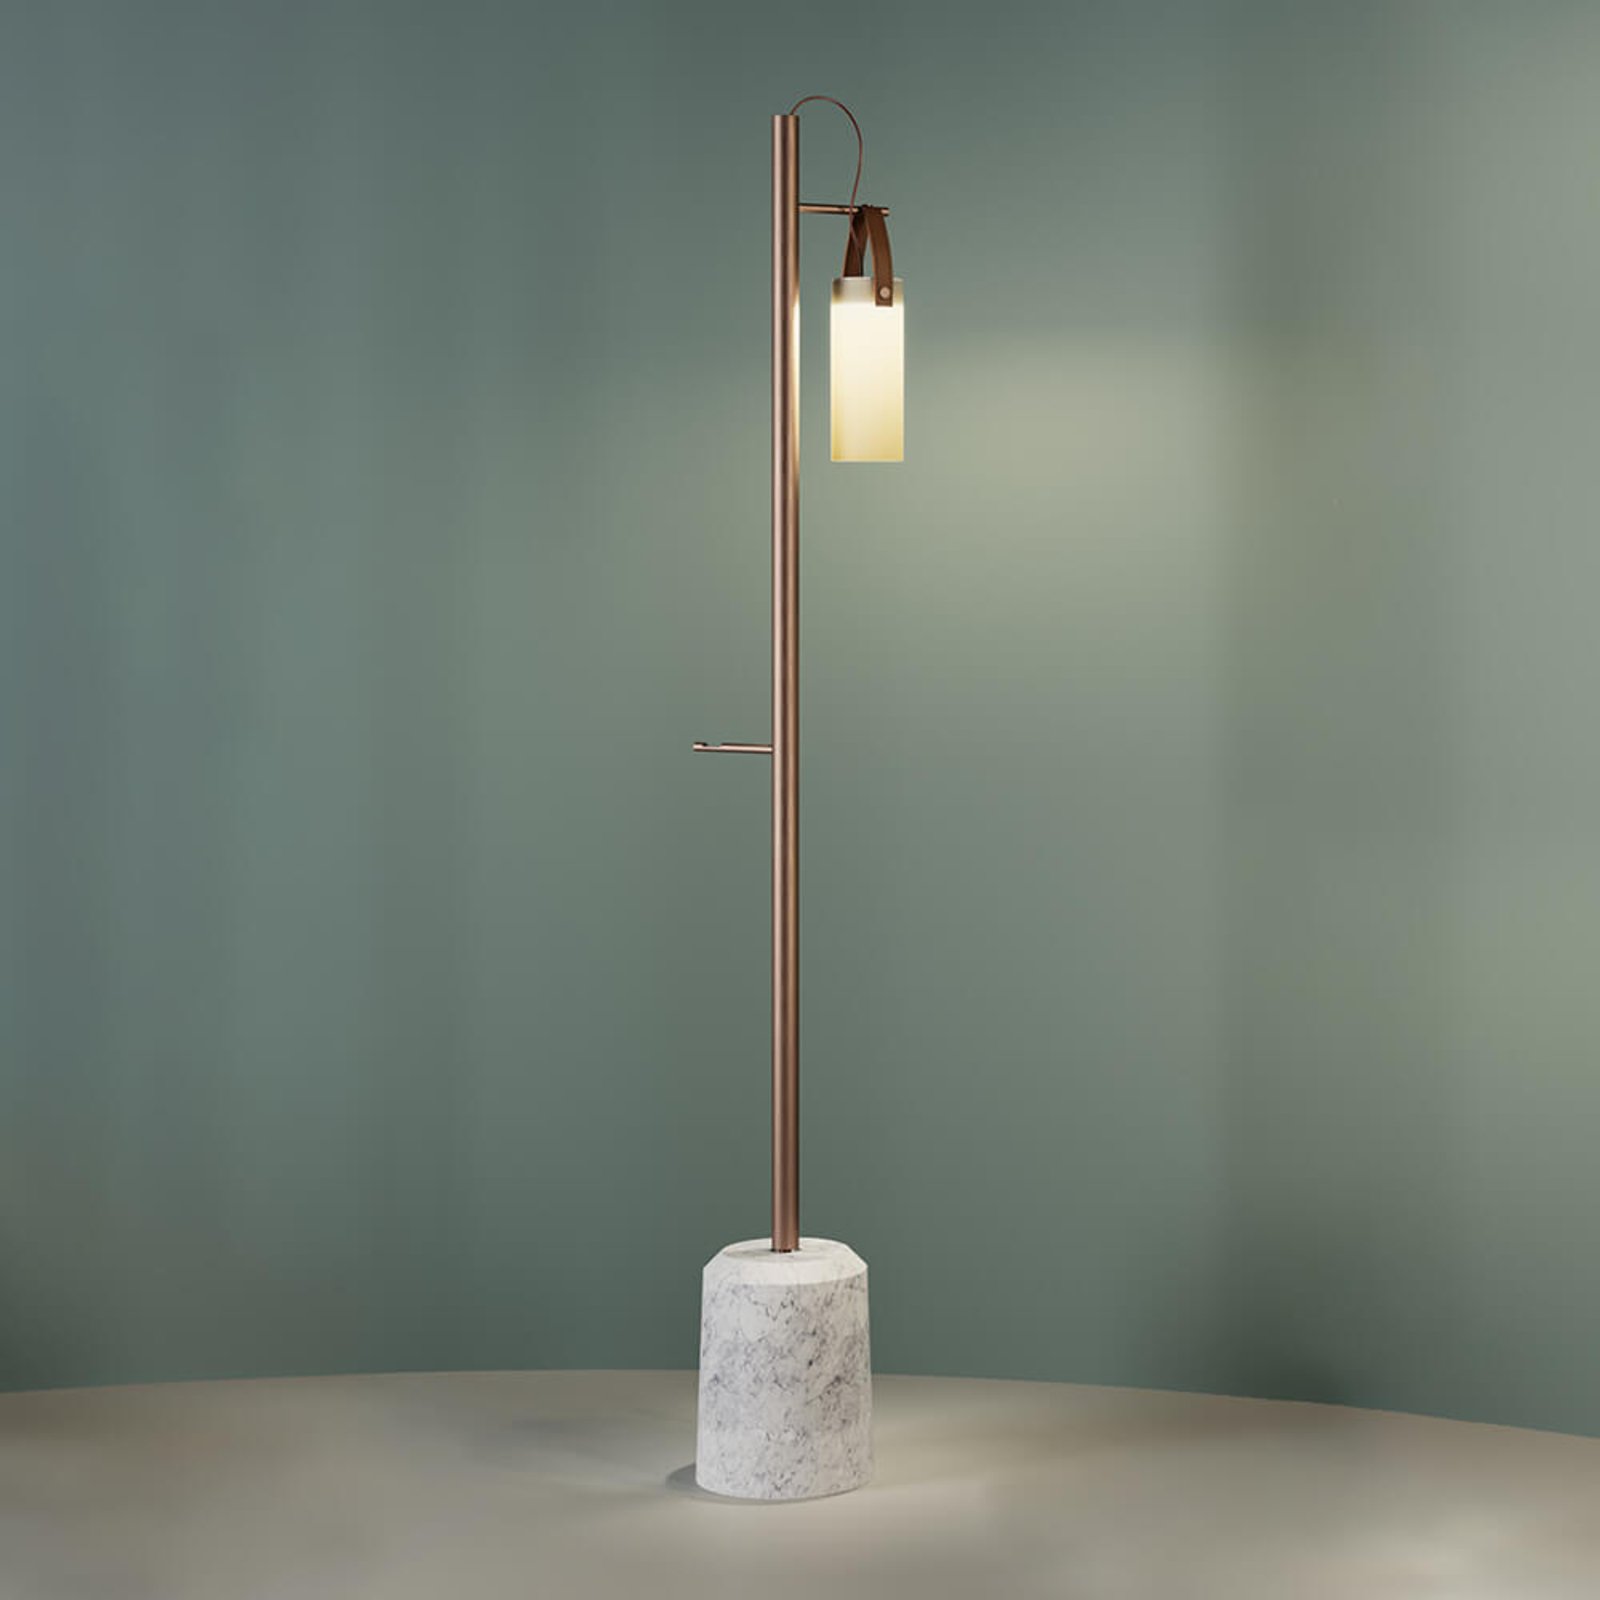 Designer-LED-golvlampa Galerie, en ljuskälla